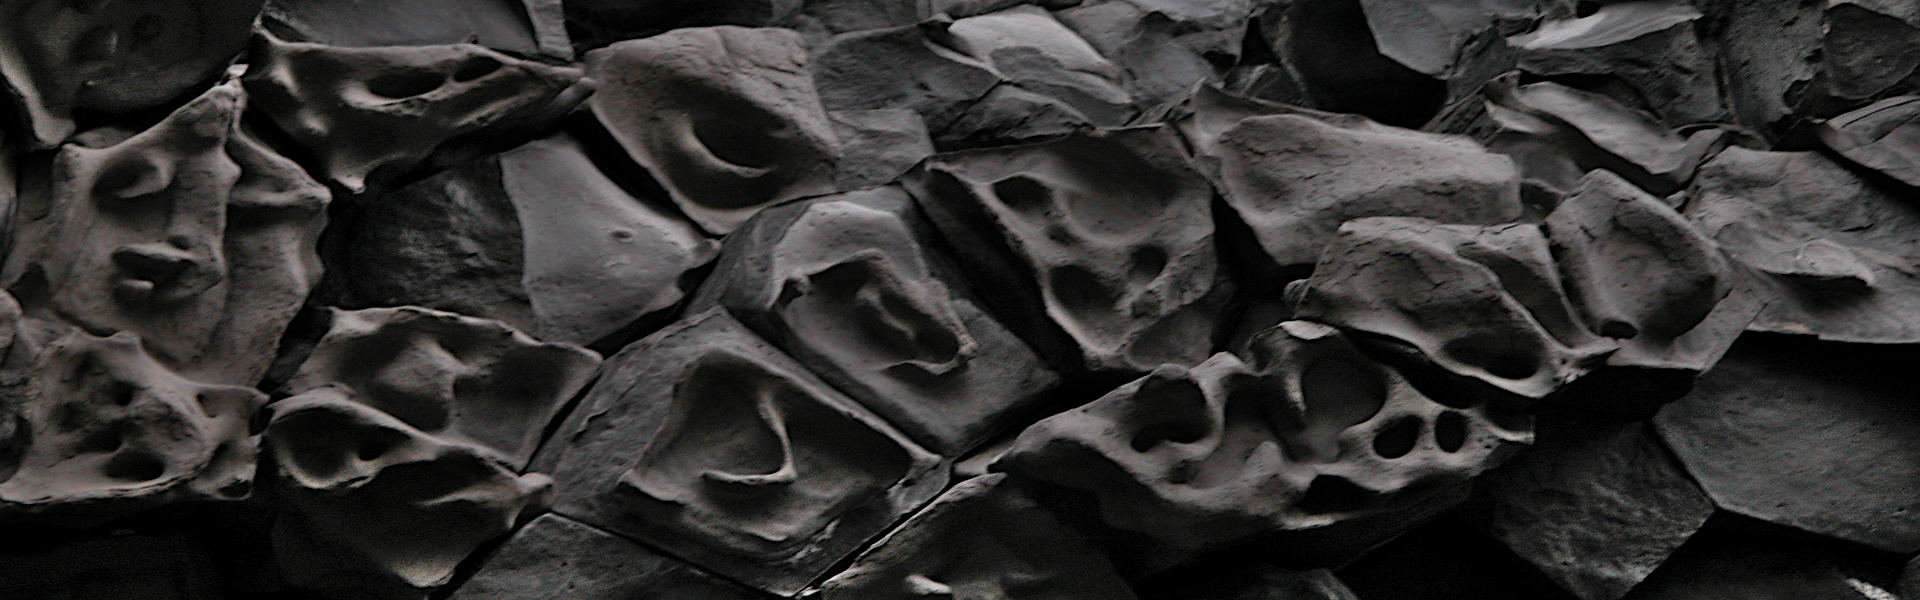 Geister-Gesichter-Island geschmolzene Basaltköpfe